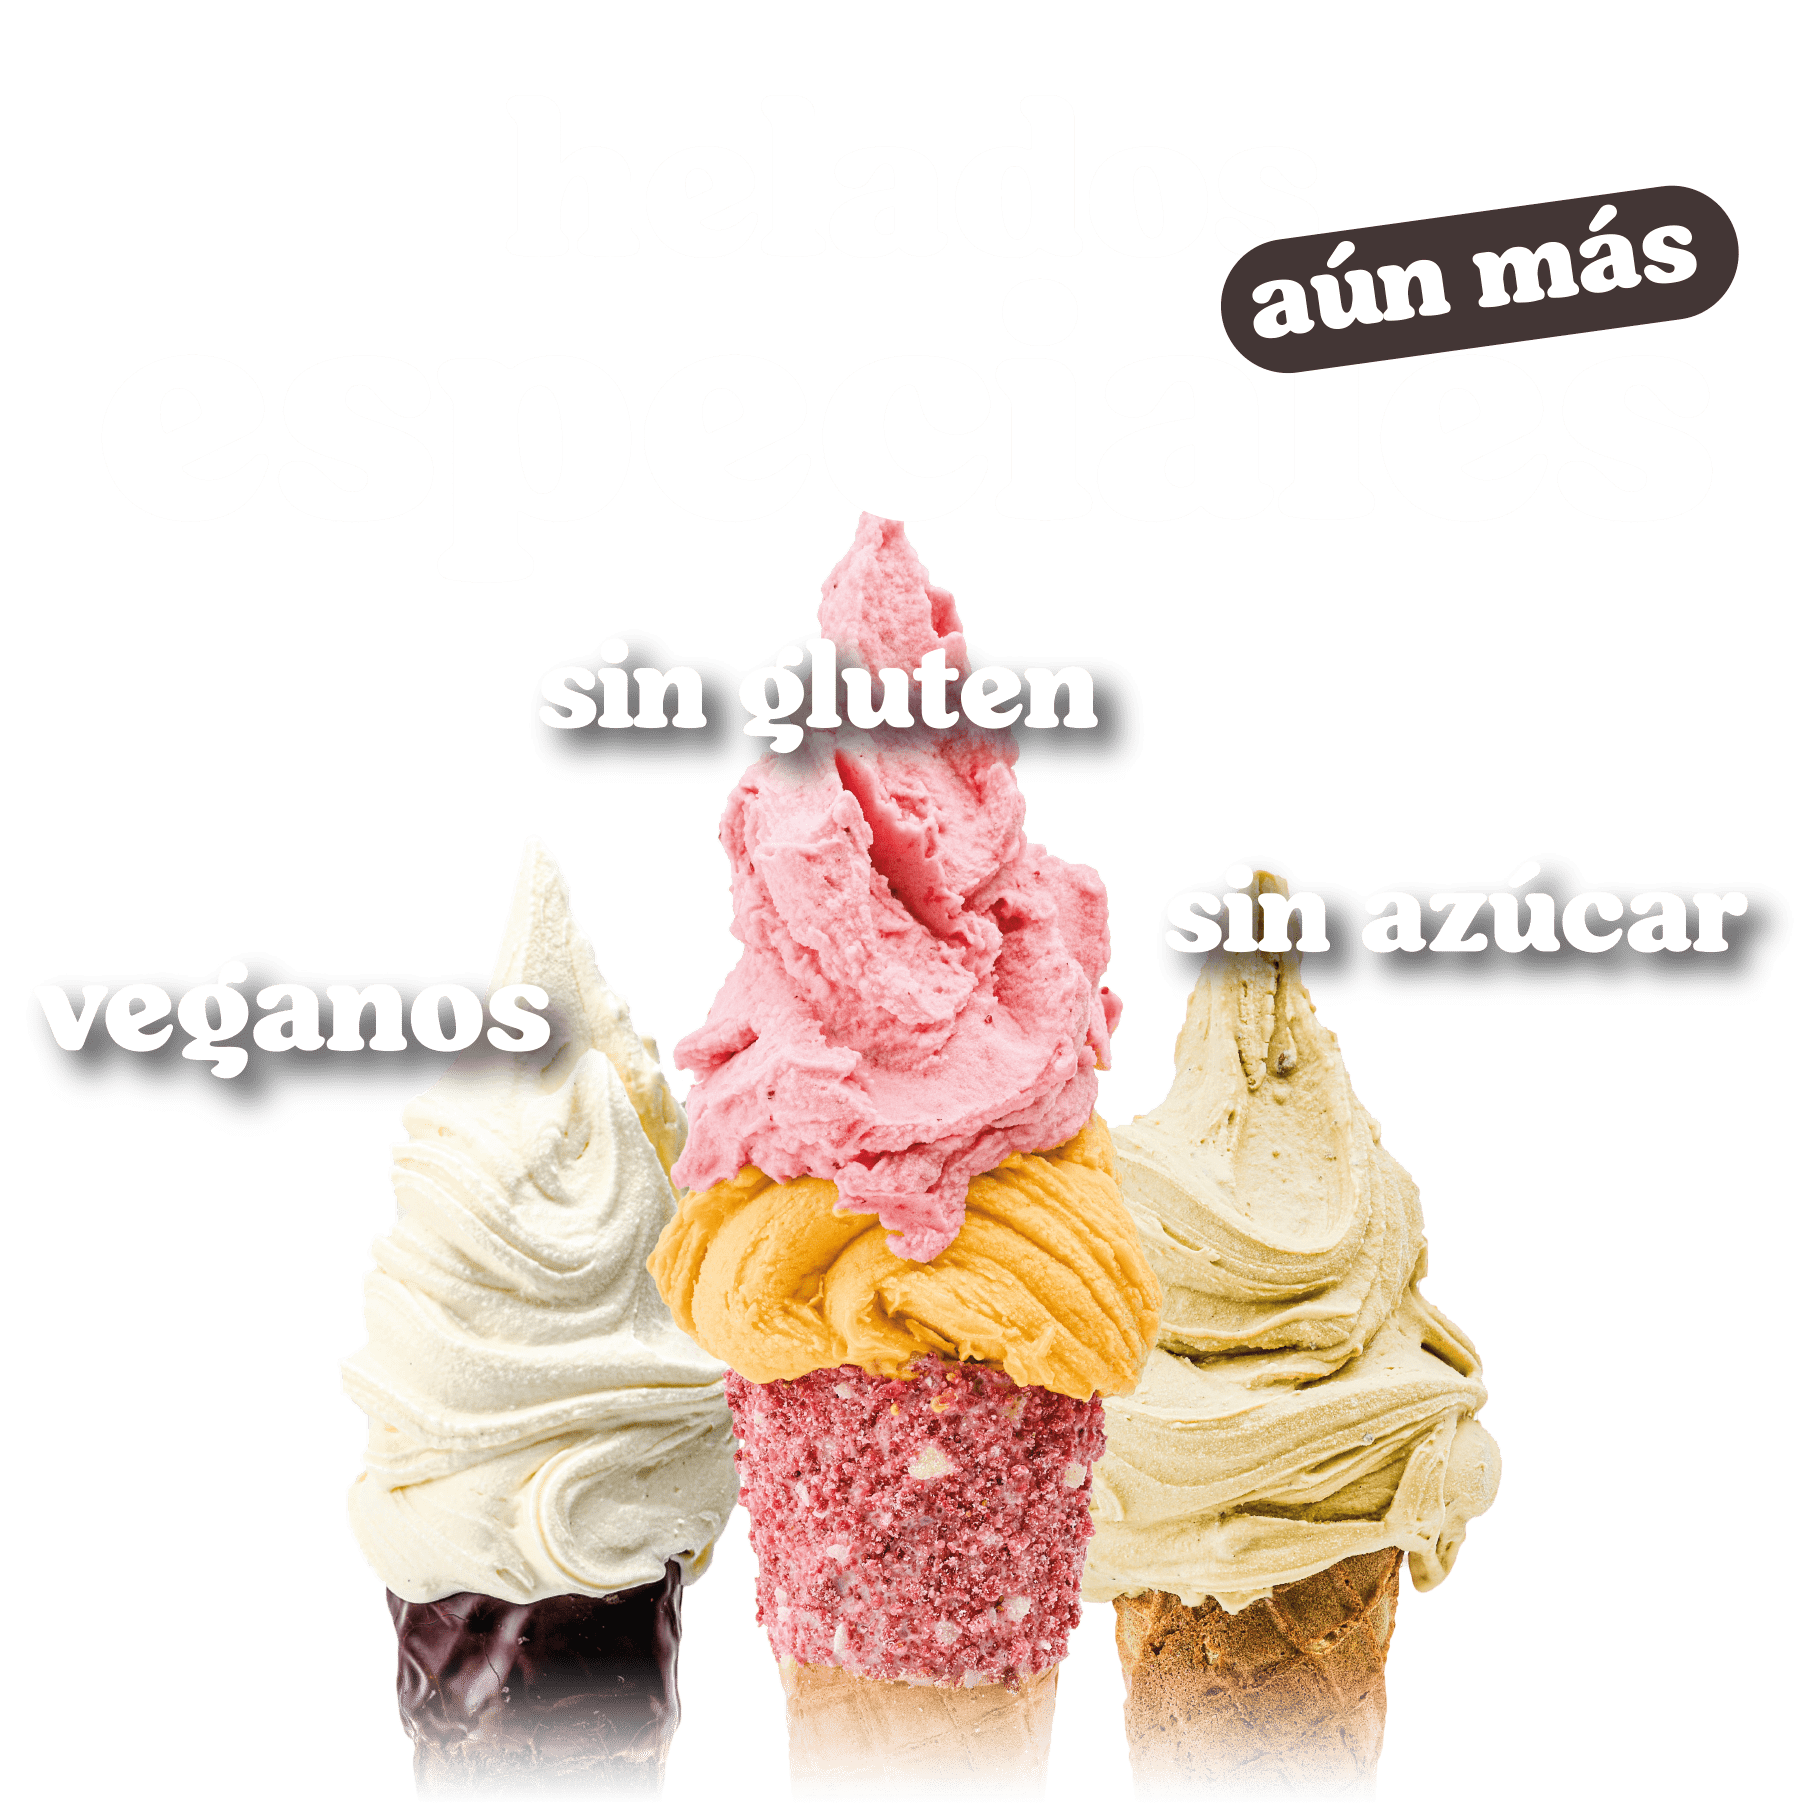 helados-veganos-sin-gluten-sin-azucar-gioelia